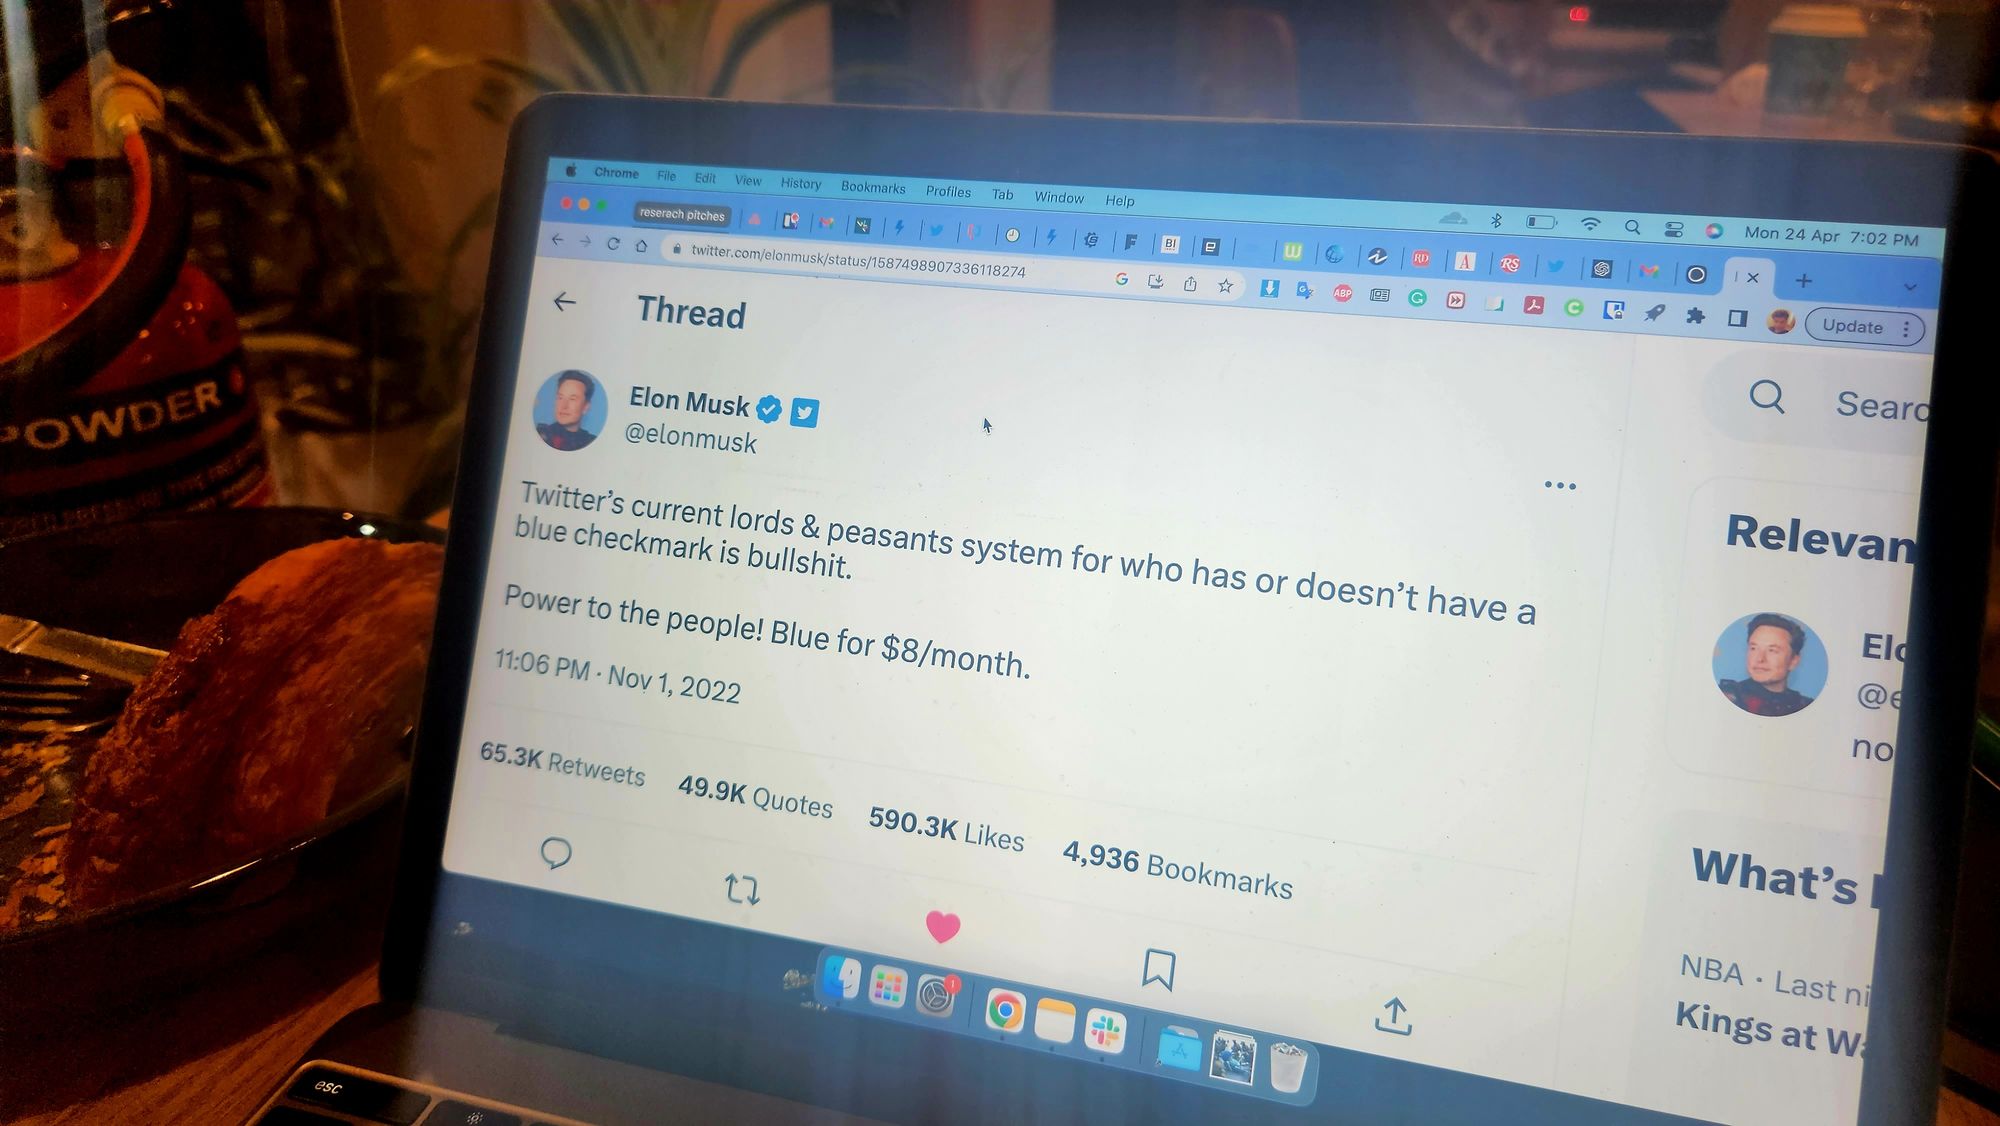 Image of an Elon Musk tweet on a laptop